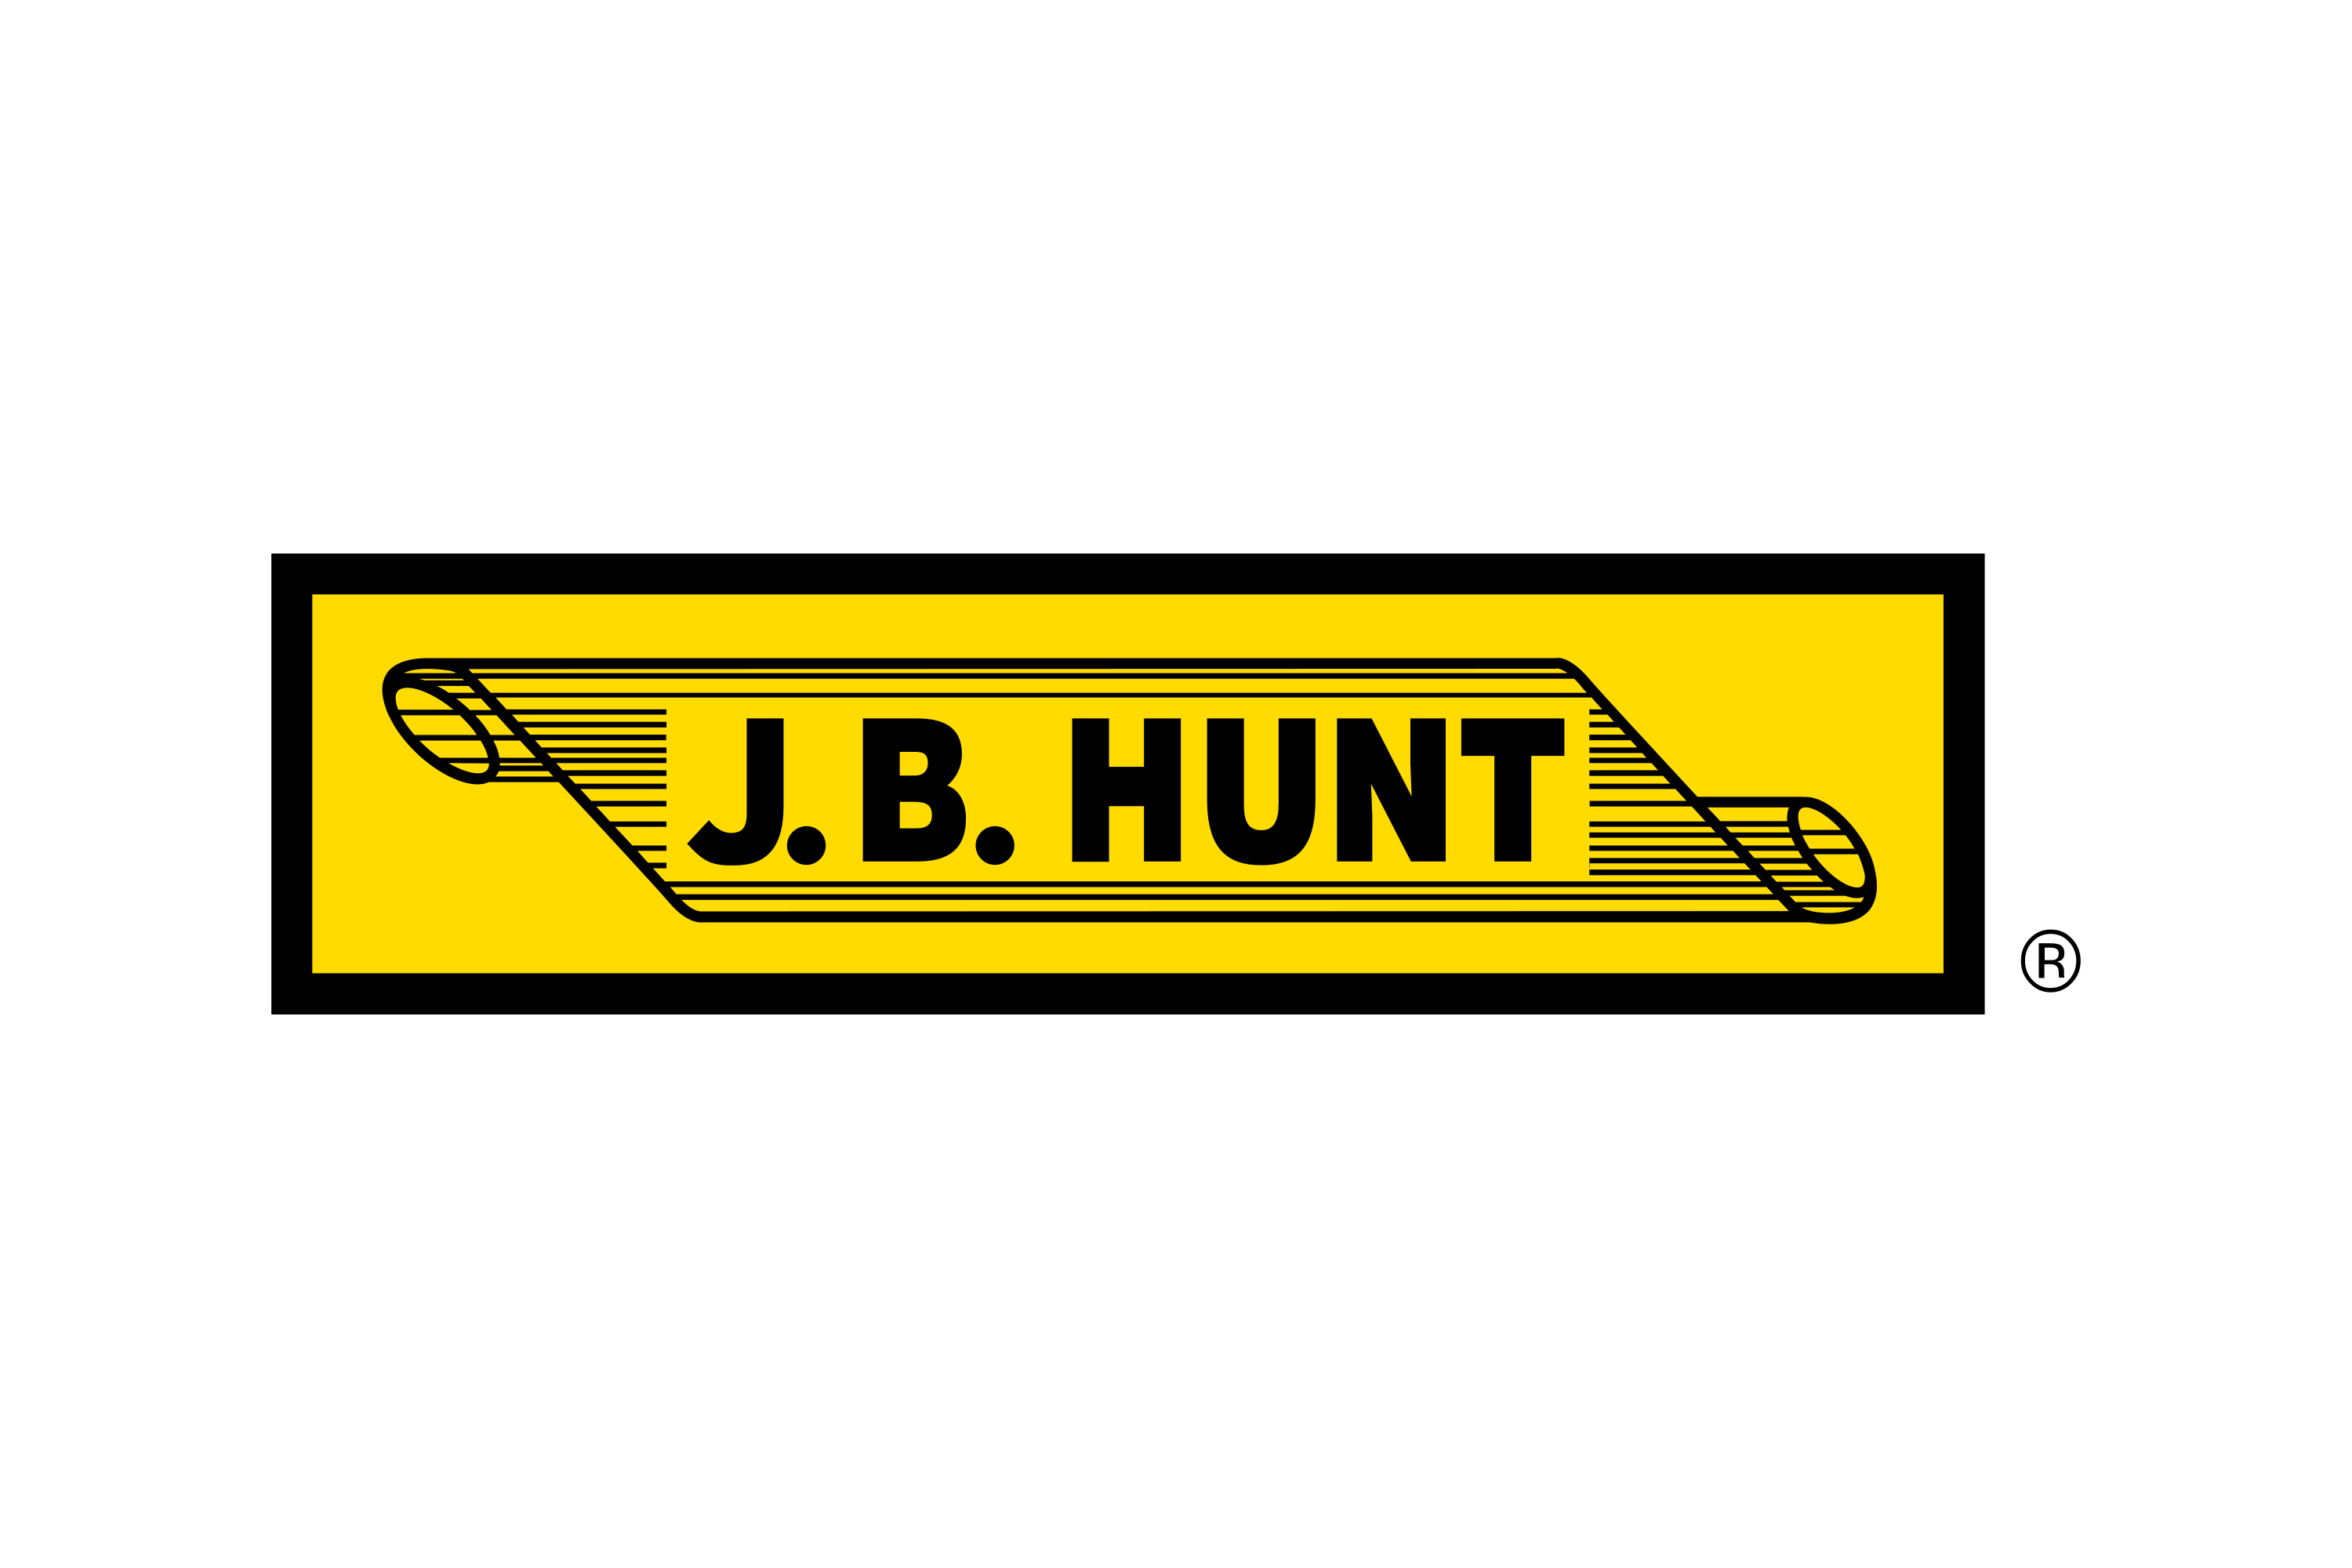 Download J. B. Hunt Logo in SVG Vector or PNG File Format - Logo.wine